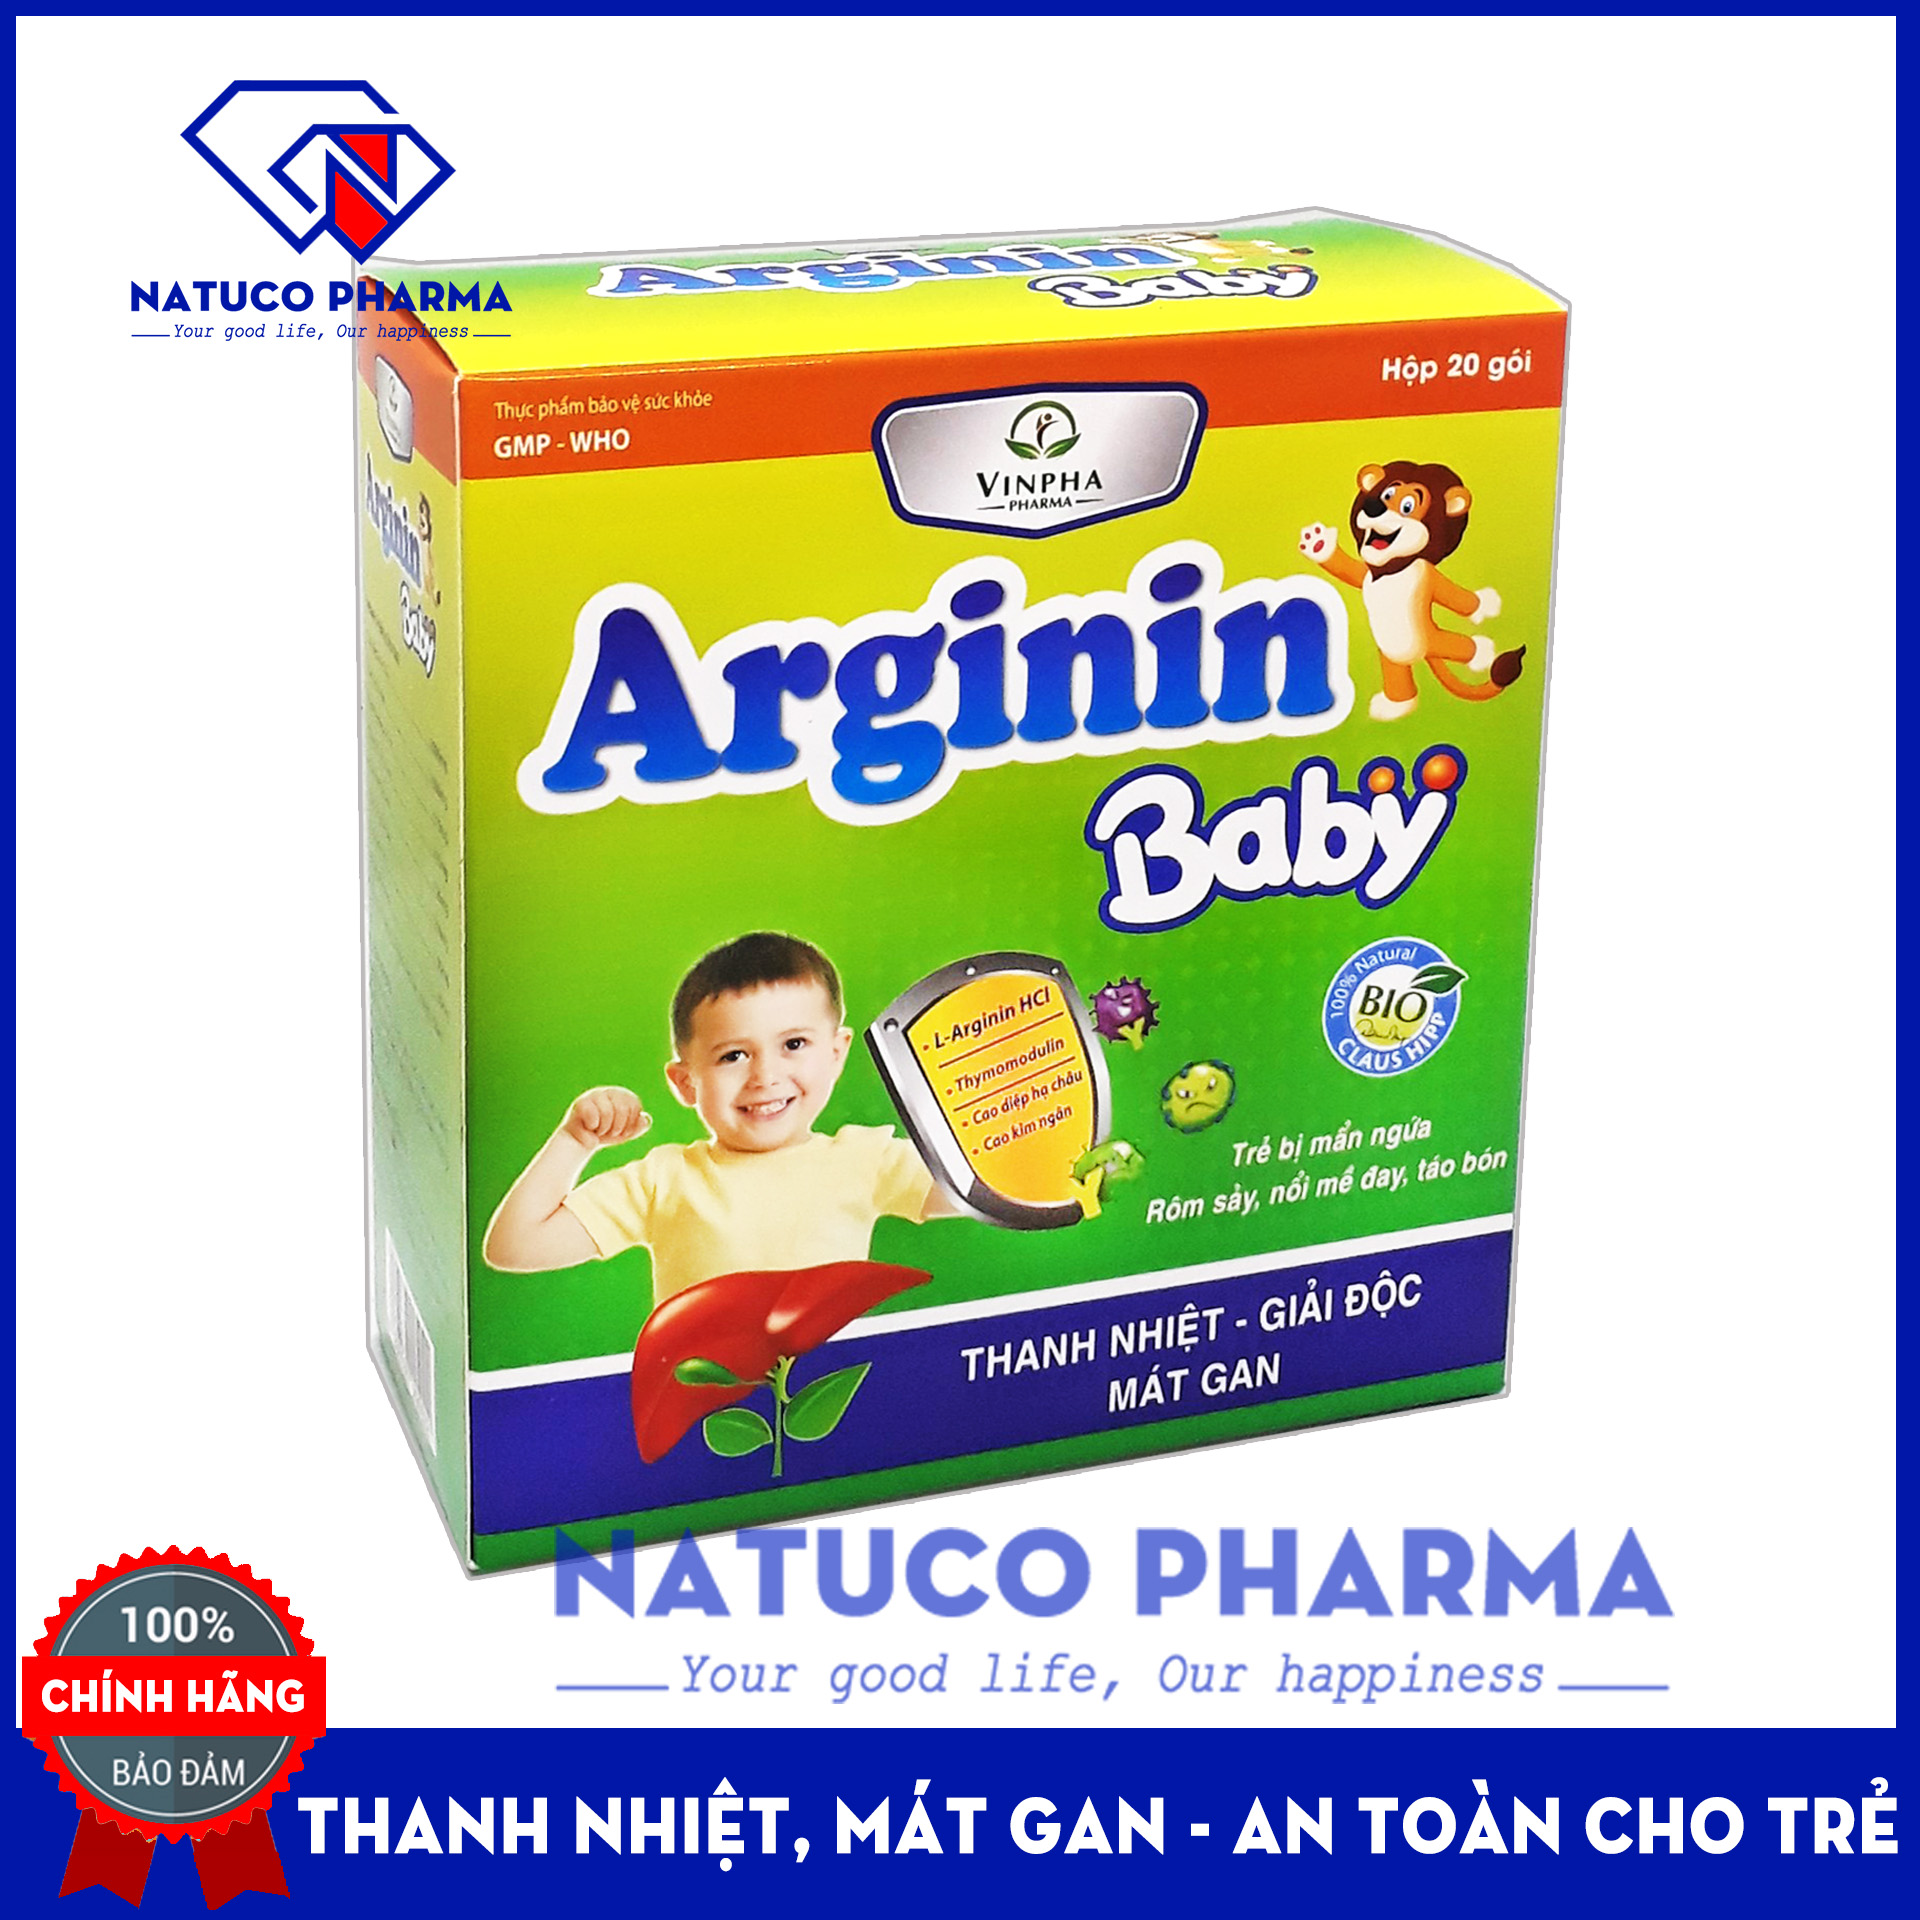 Siro Mát gan Arginin Baby thành phần thảo dược giúp giảm mụn nhọt, mẩn ngứa